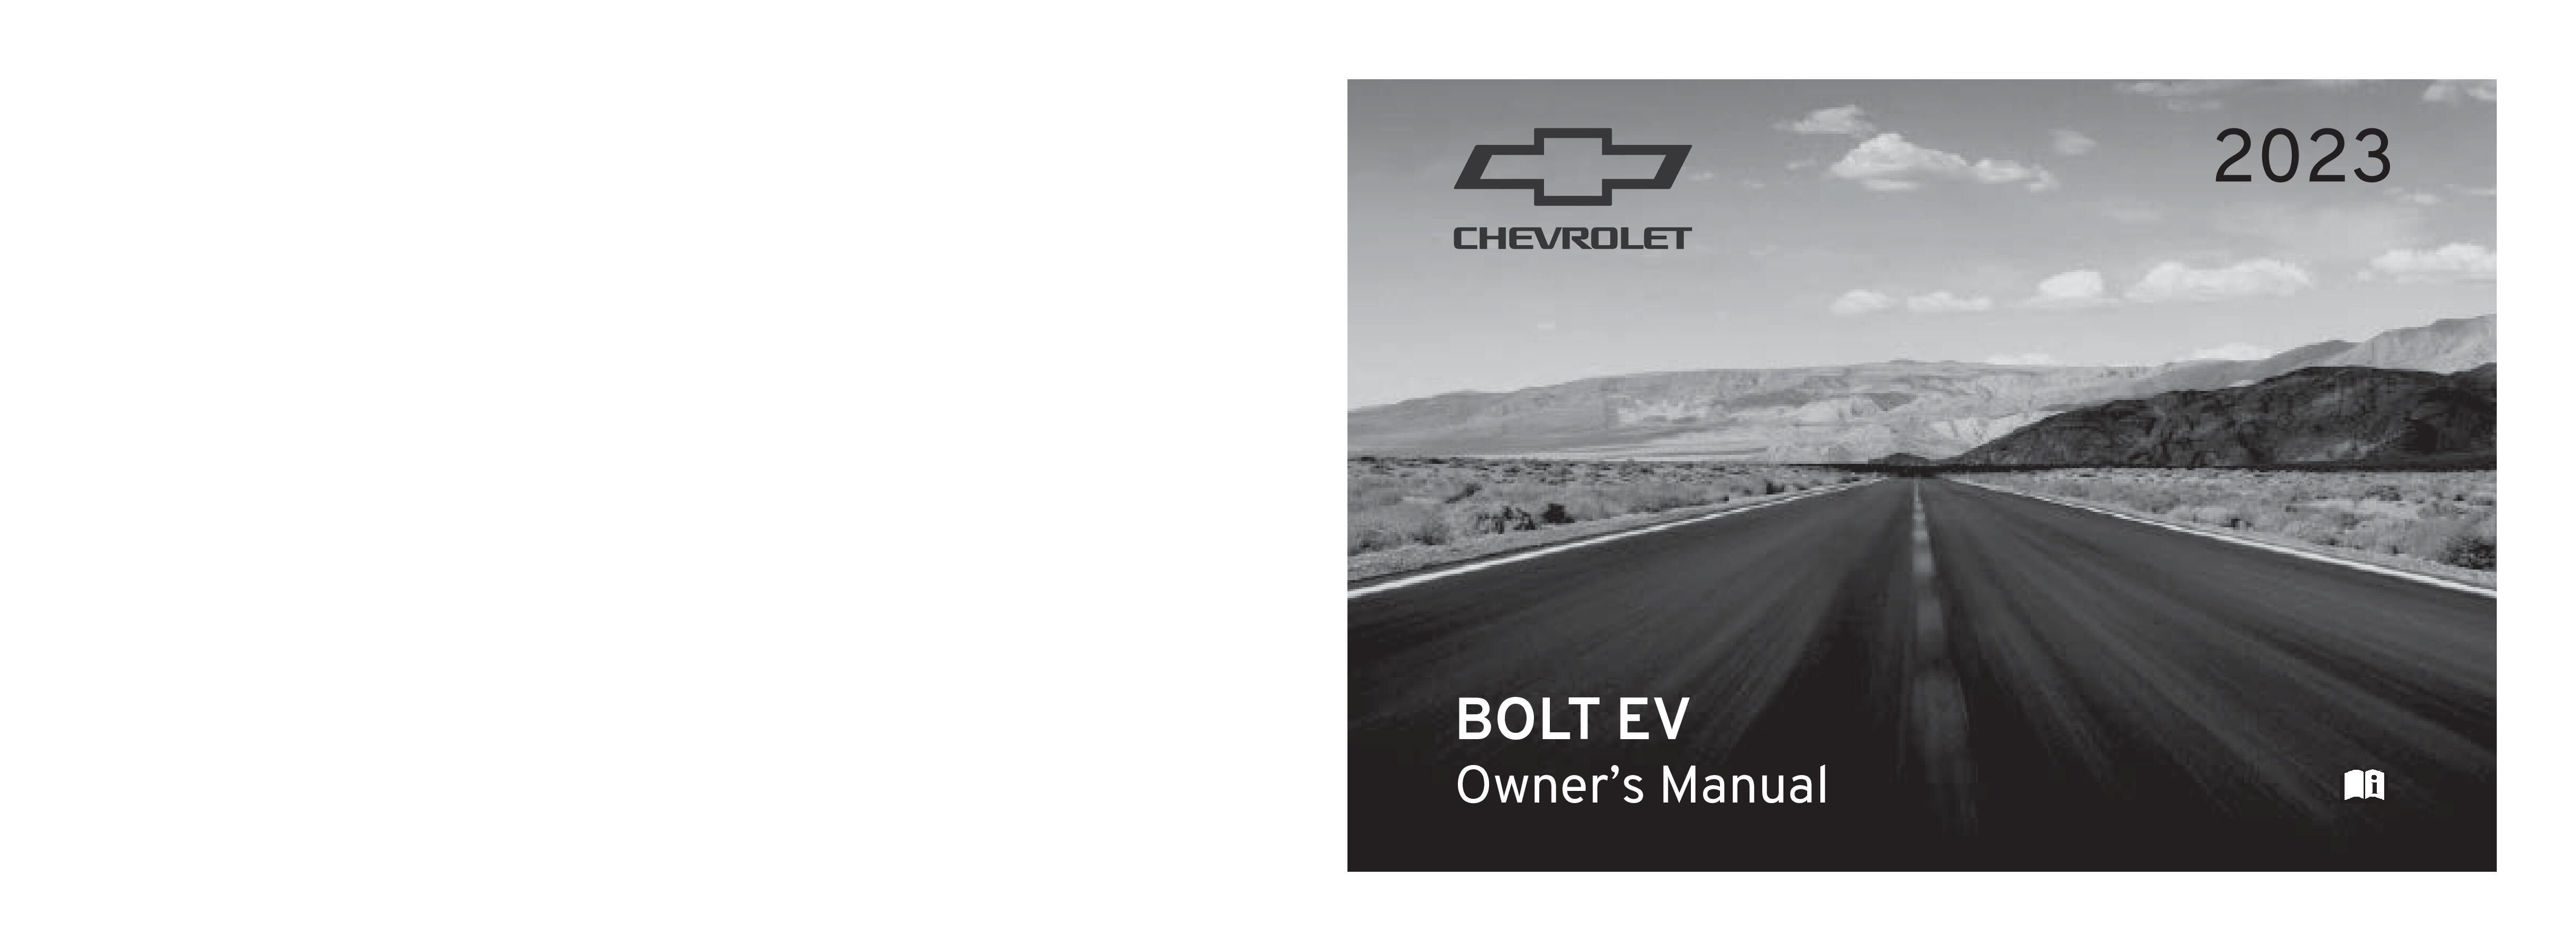 2023 Chevrolet Bolt EV Owner's Manual